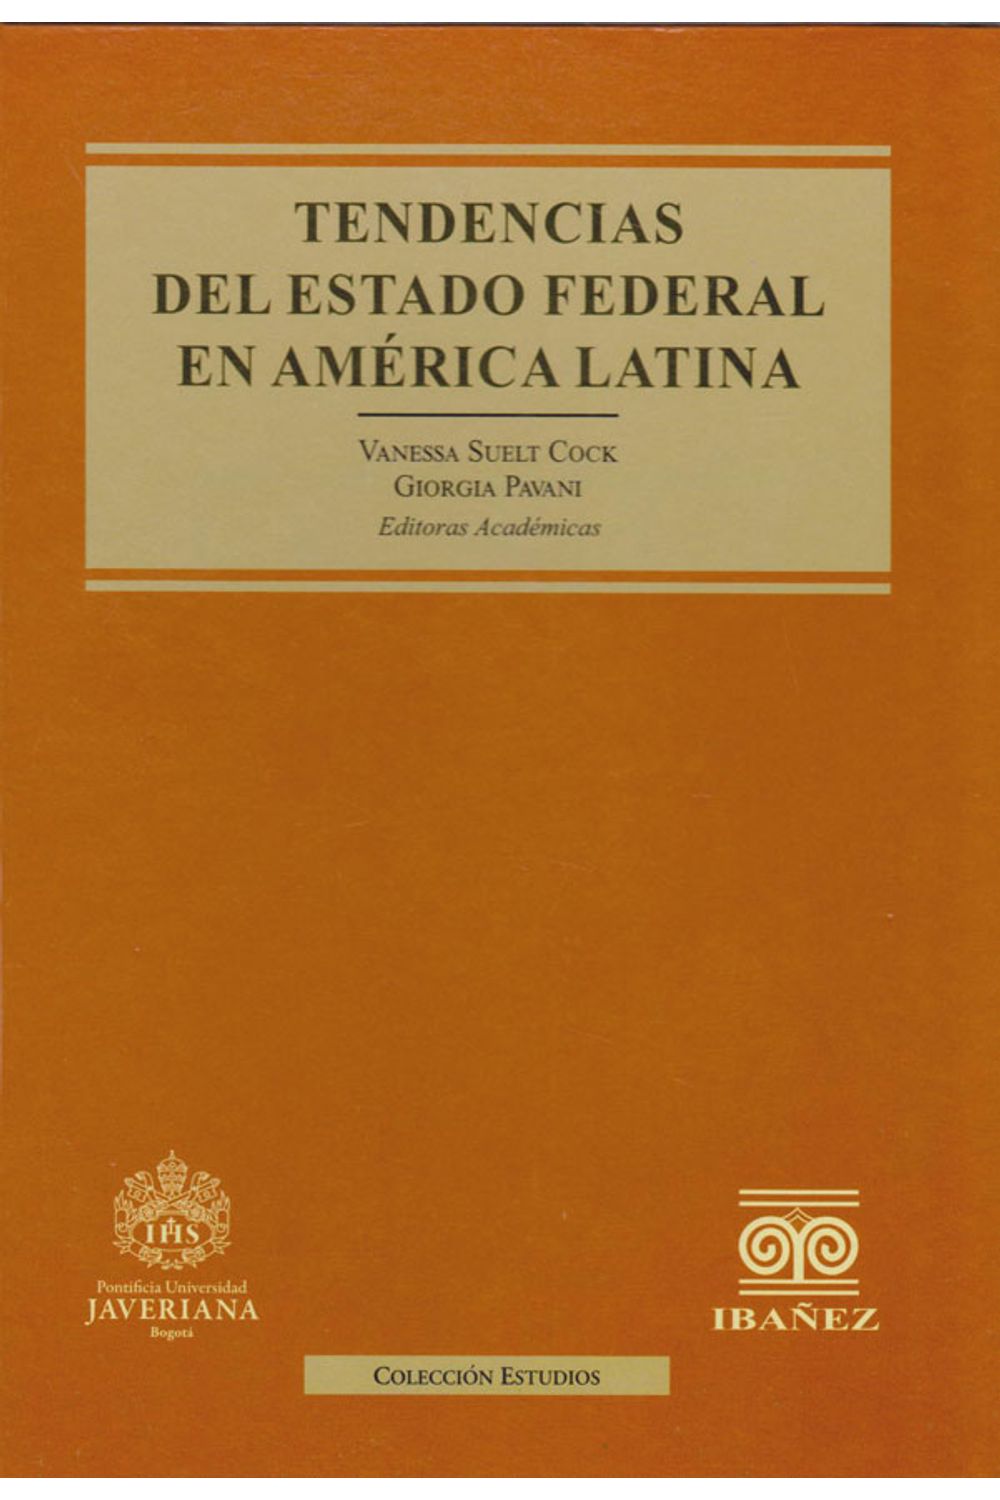 tendencias-estado-federal-america-latina-9789587910896-inte